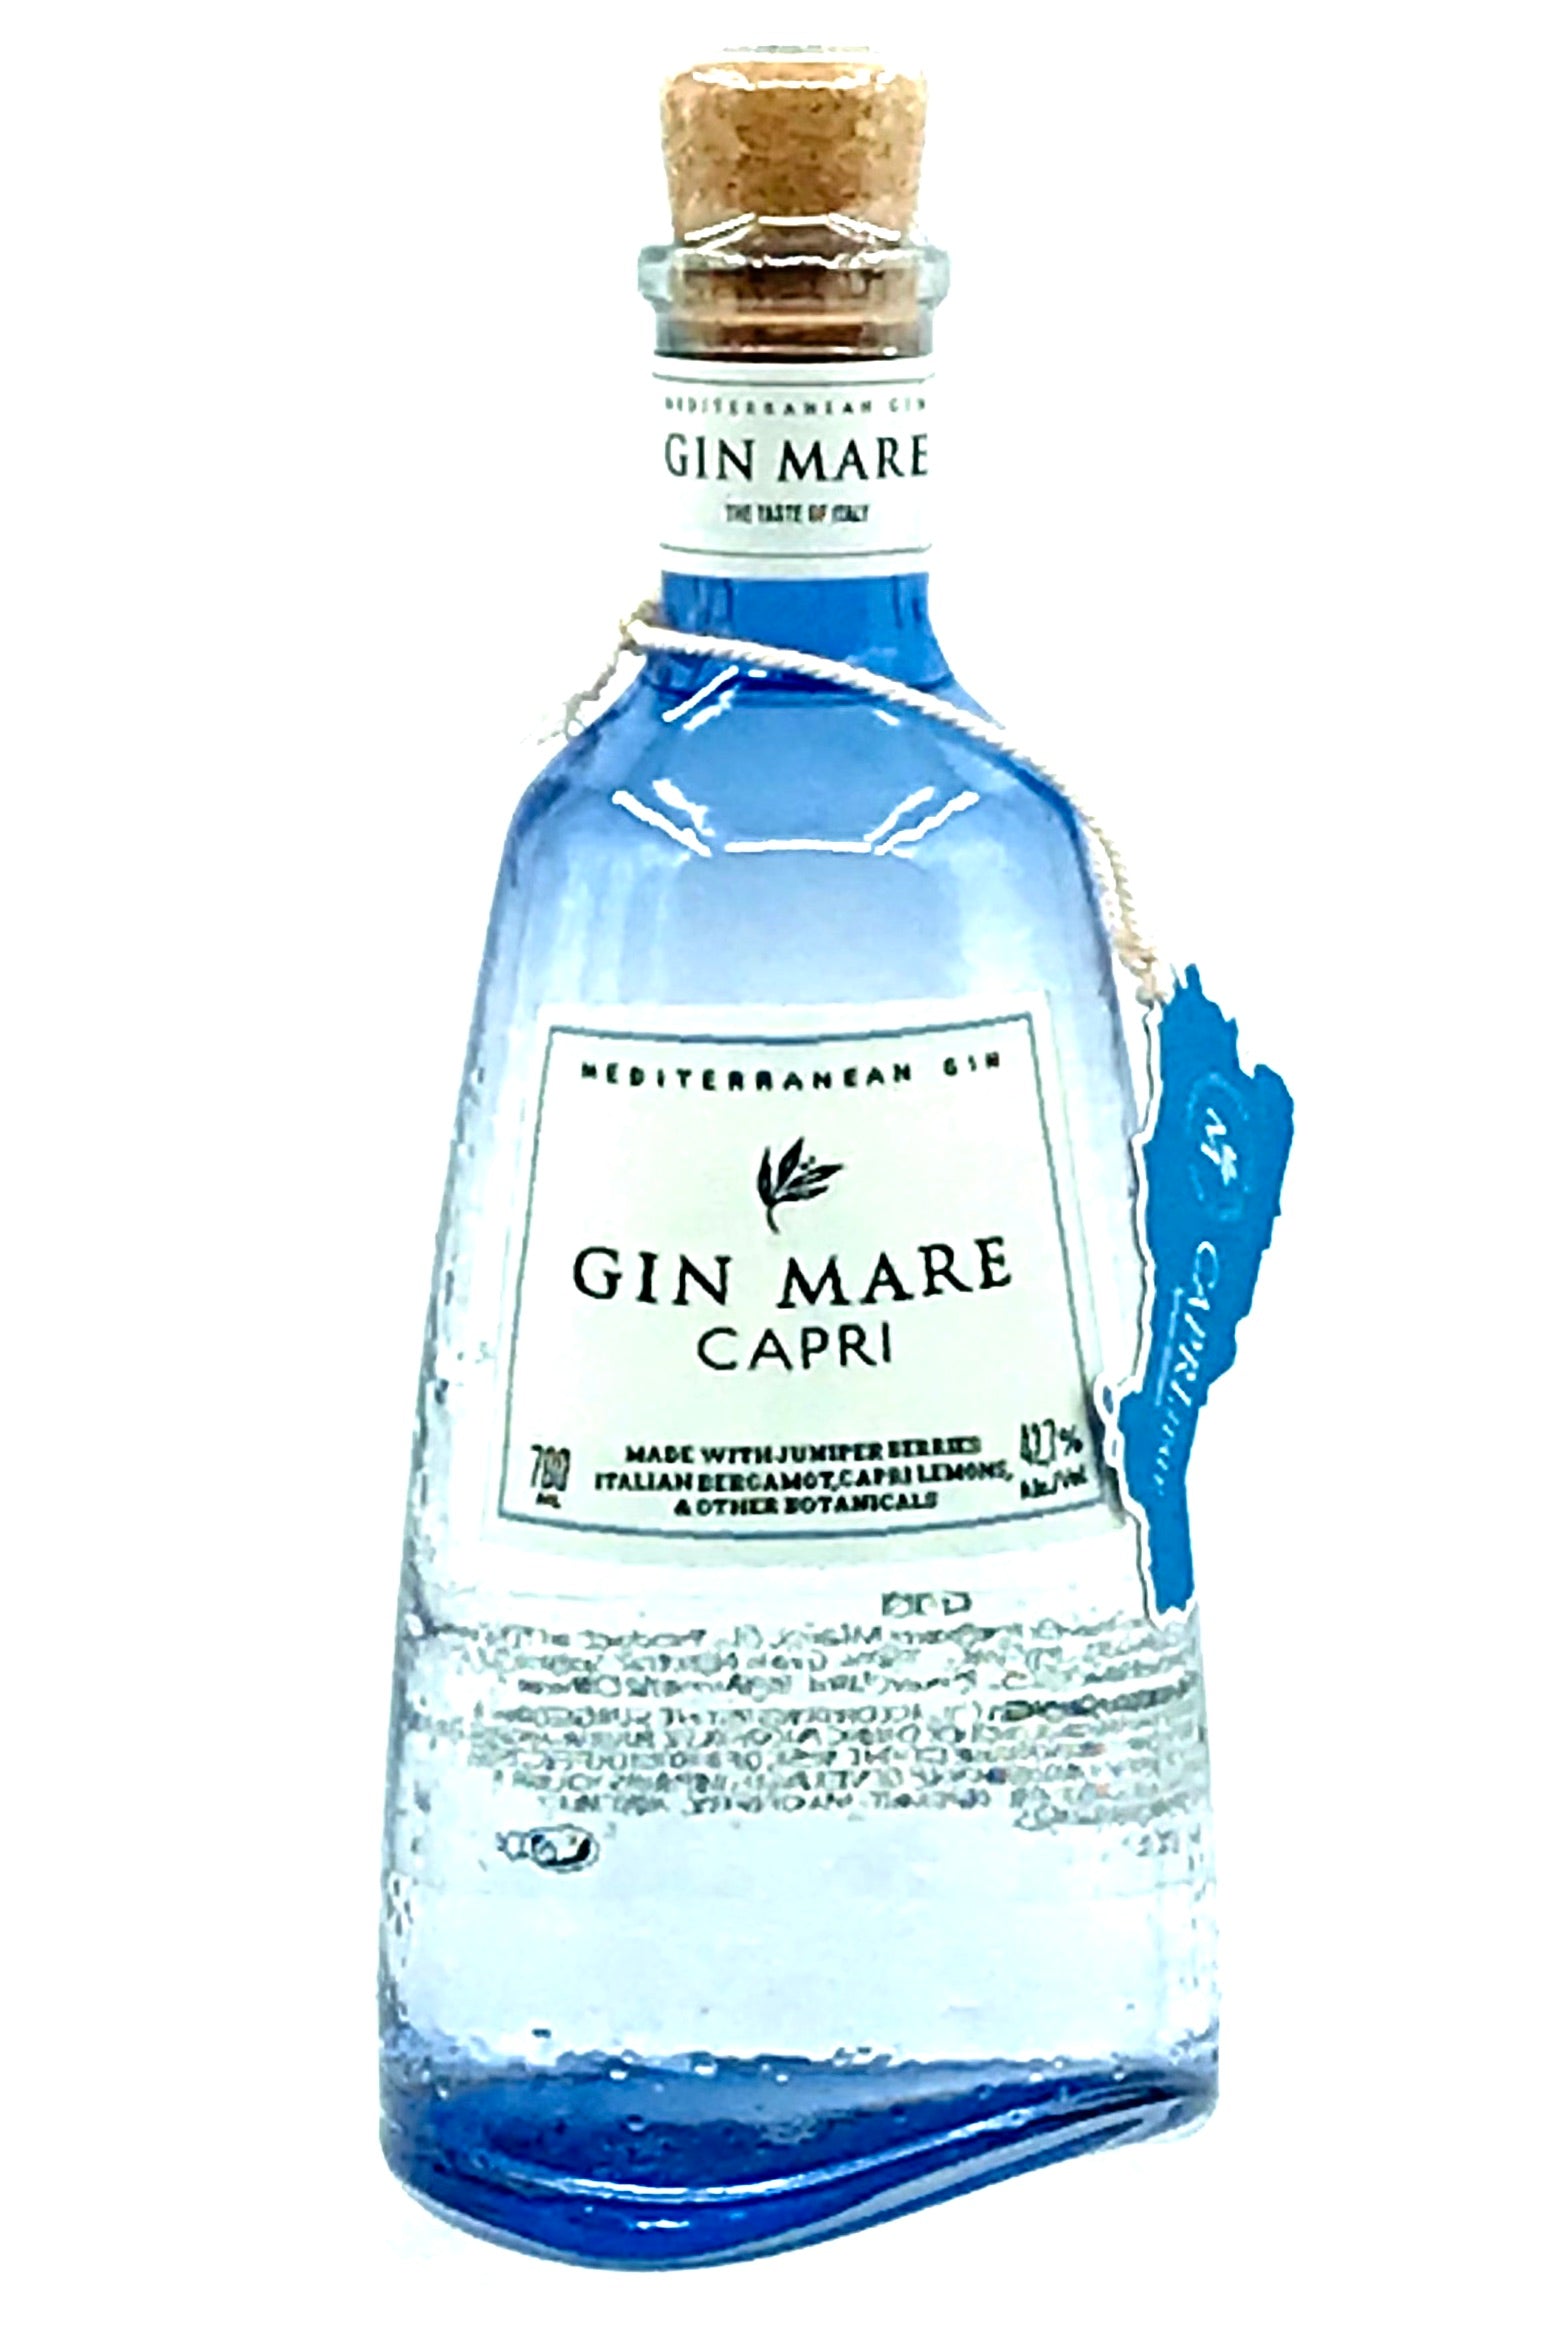 Buy Gin Mare Capri Gin Online